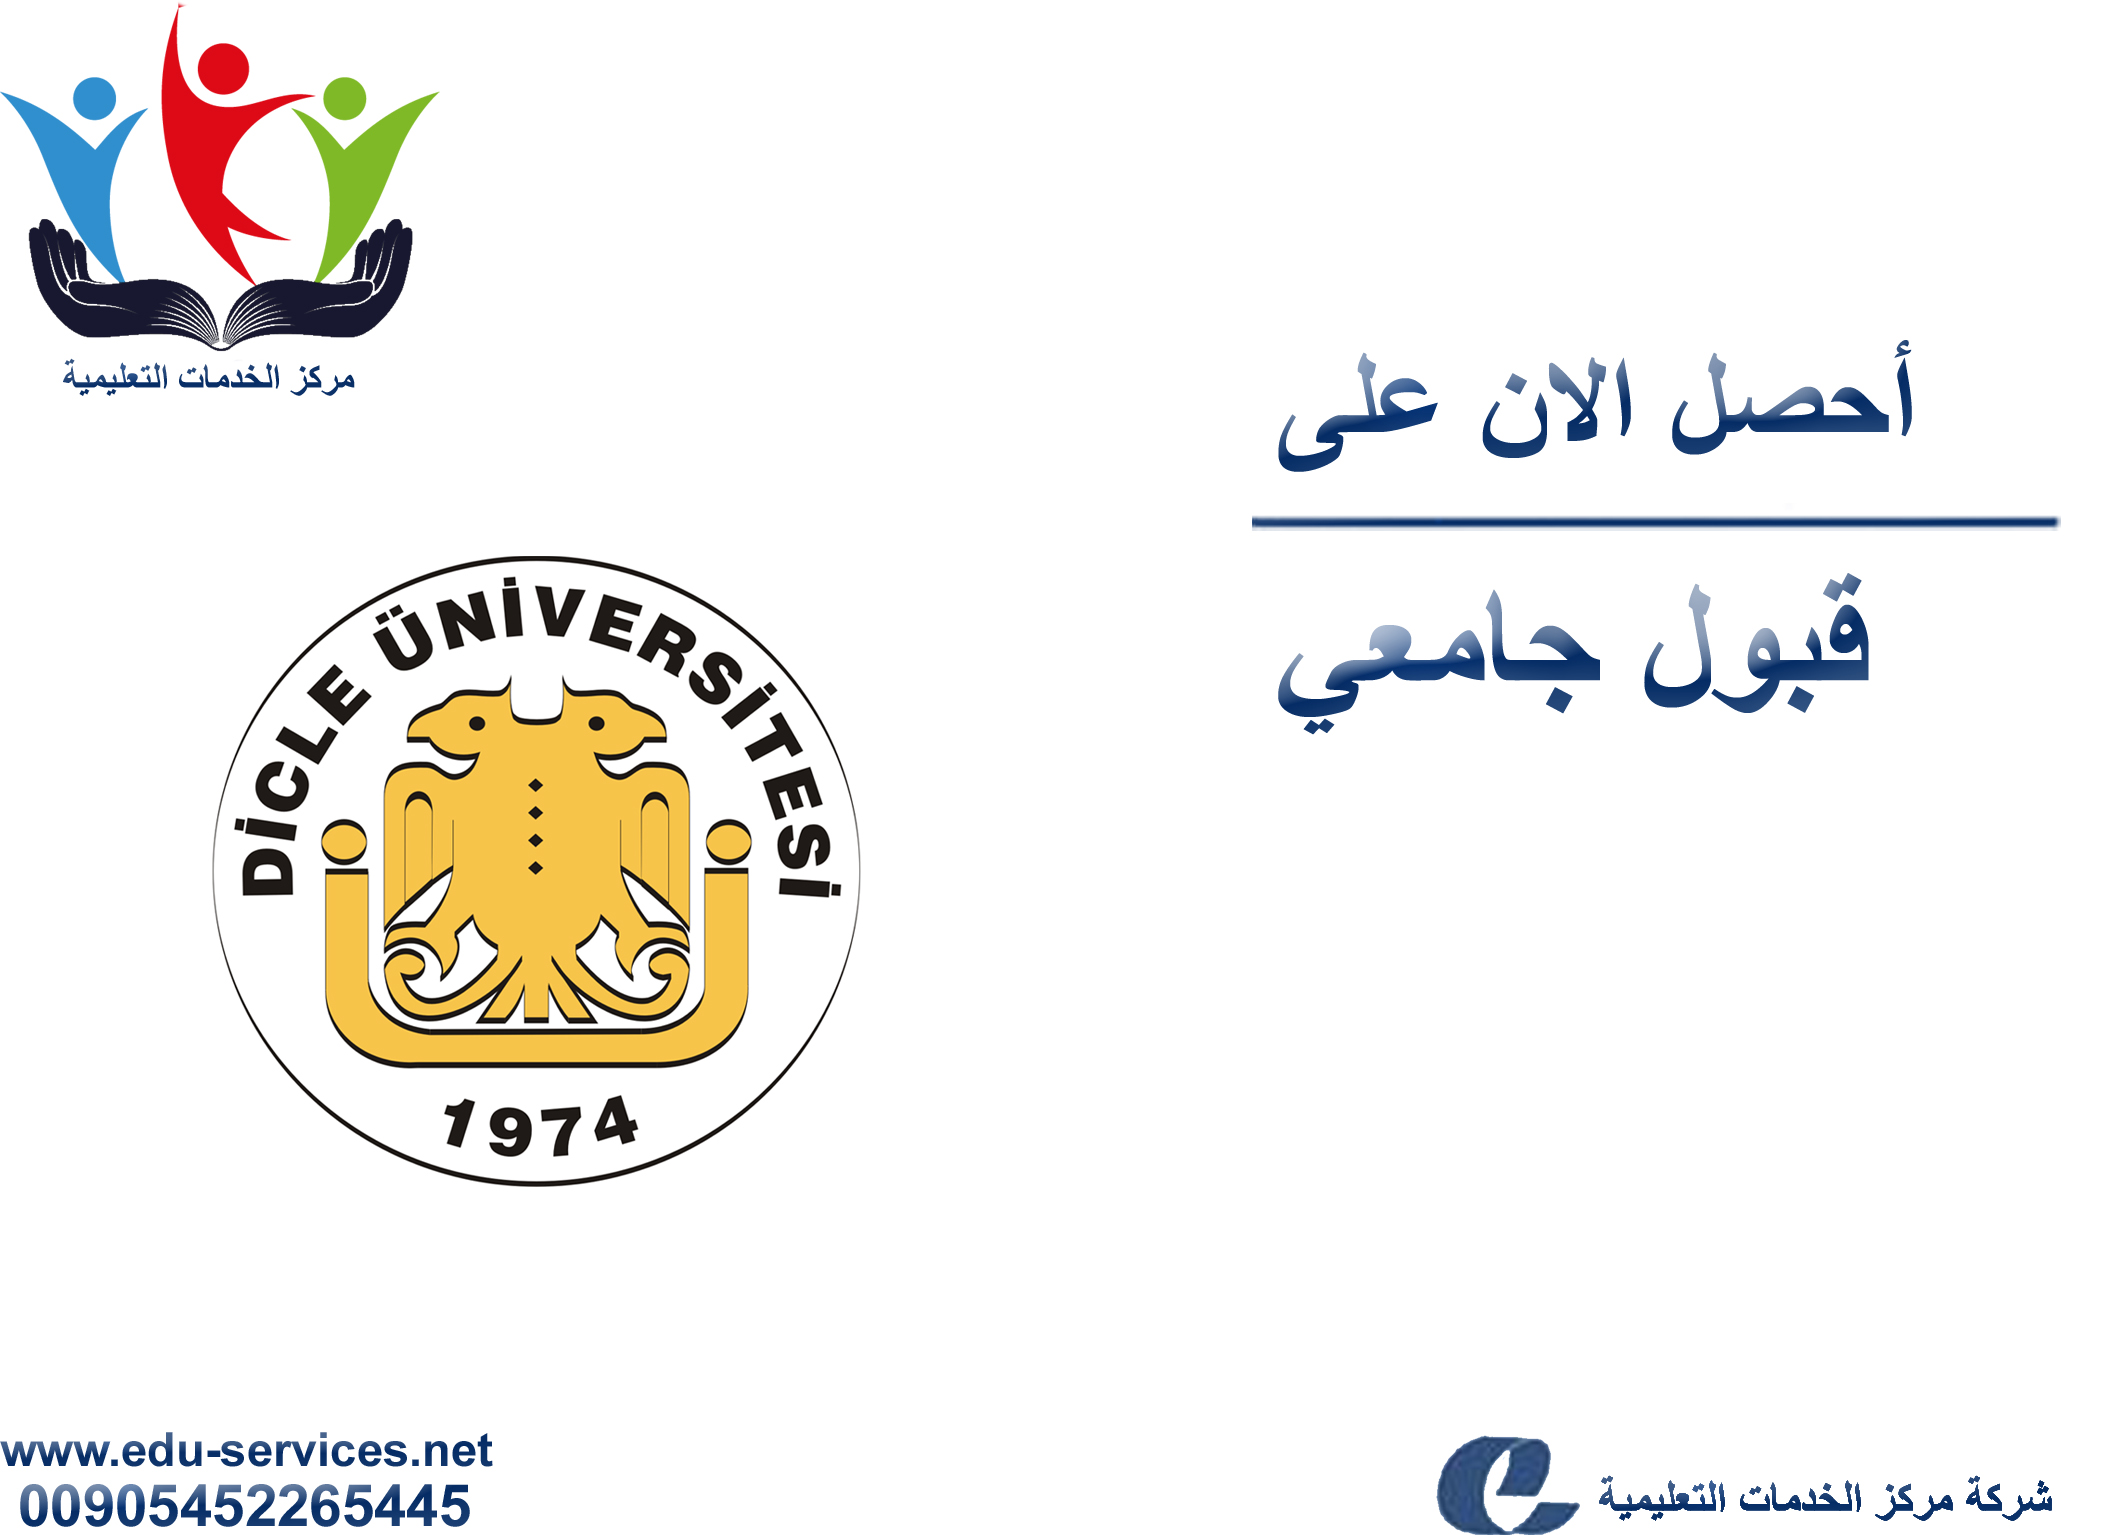 افتتاح التسجيل في جامعة دجلة للعام 2018-2019